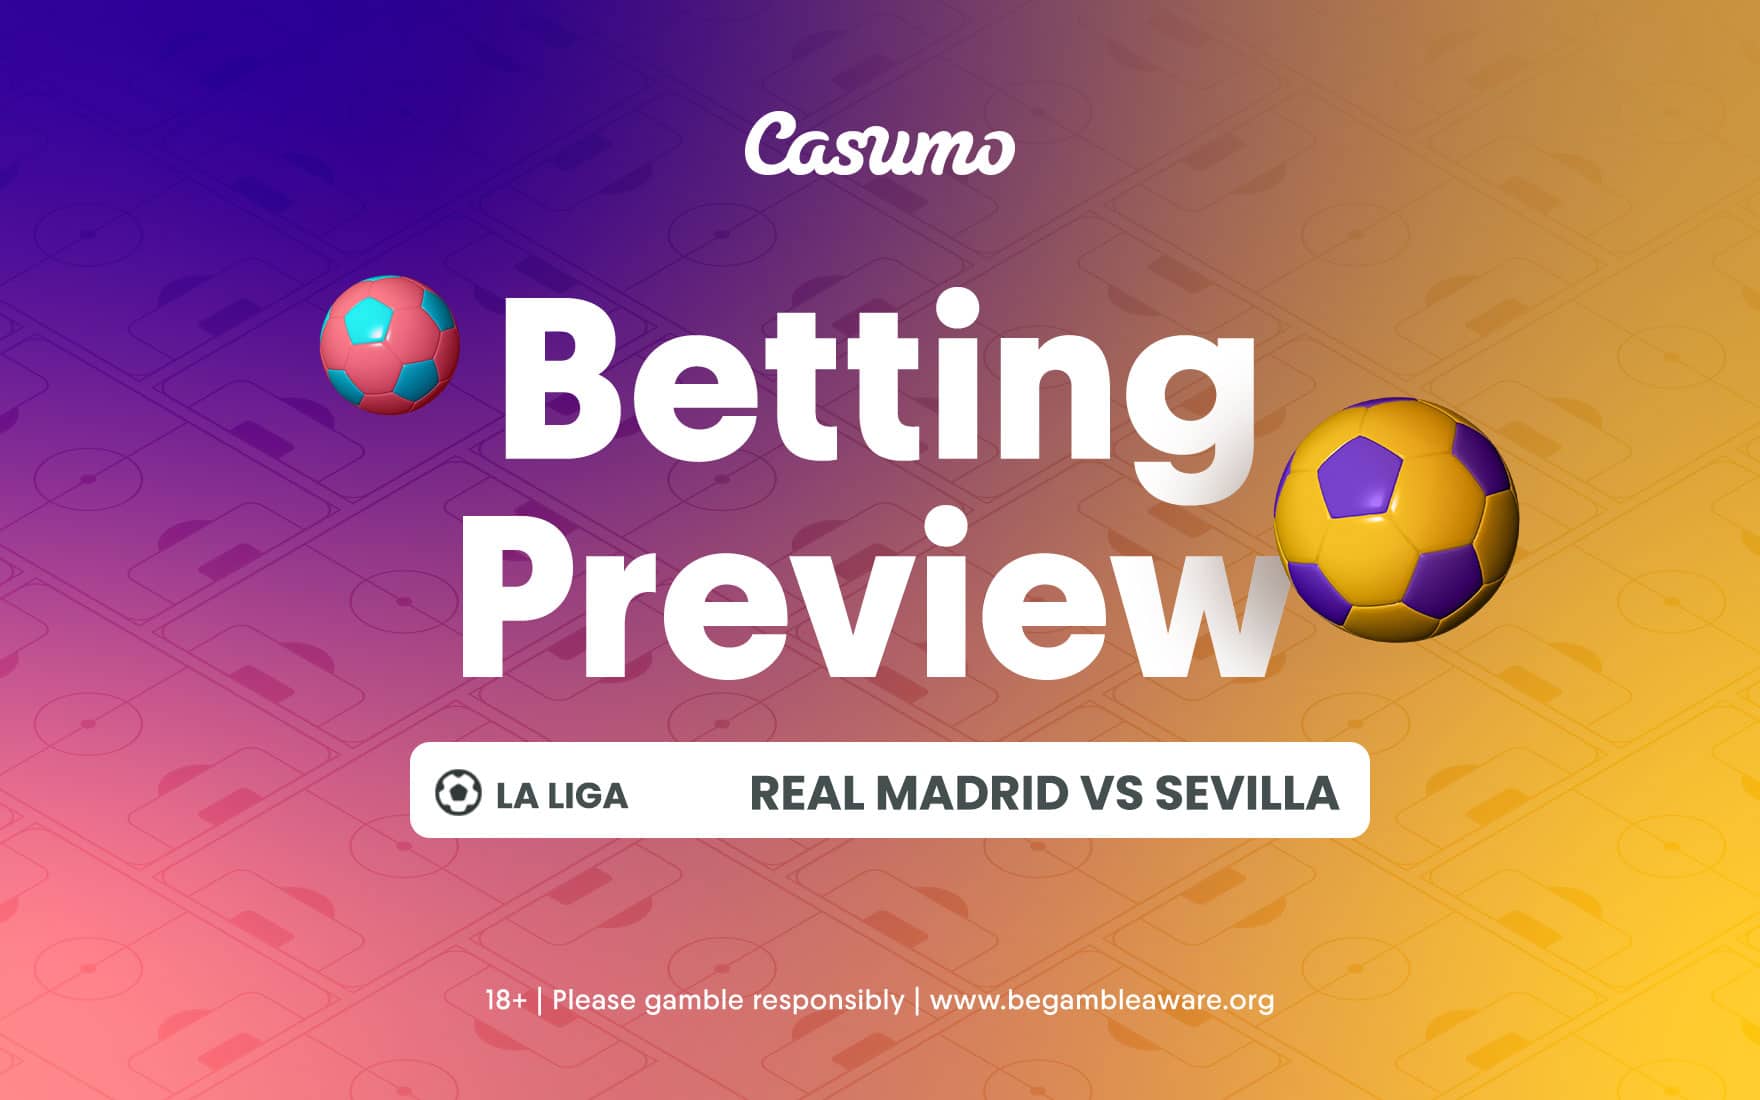 Real Madrid vs Sevilla betting tips